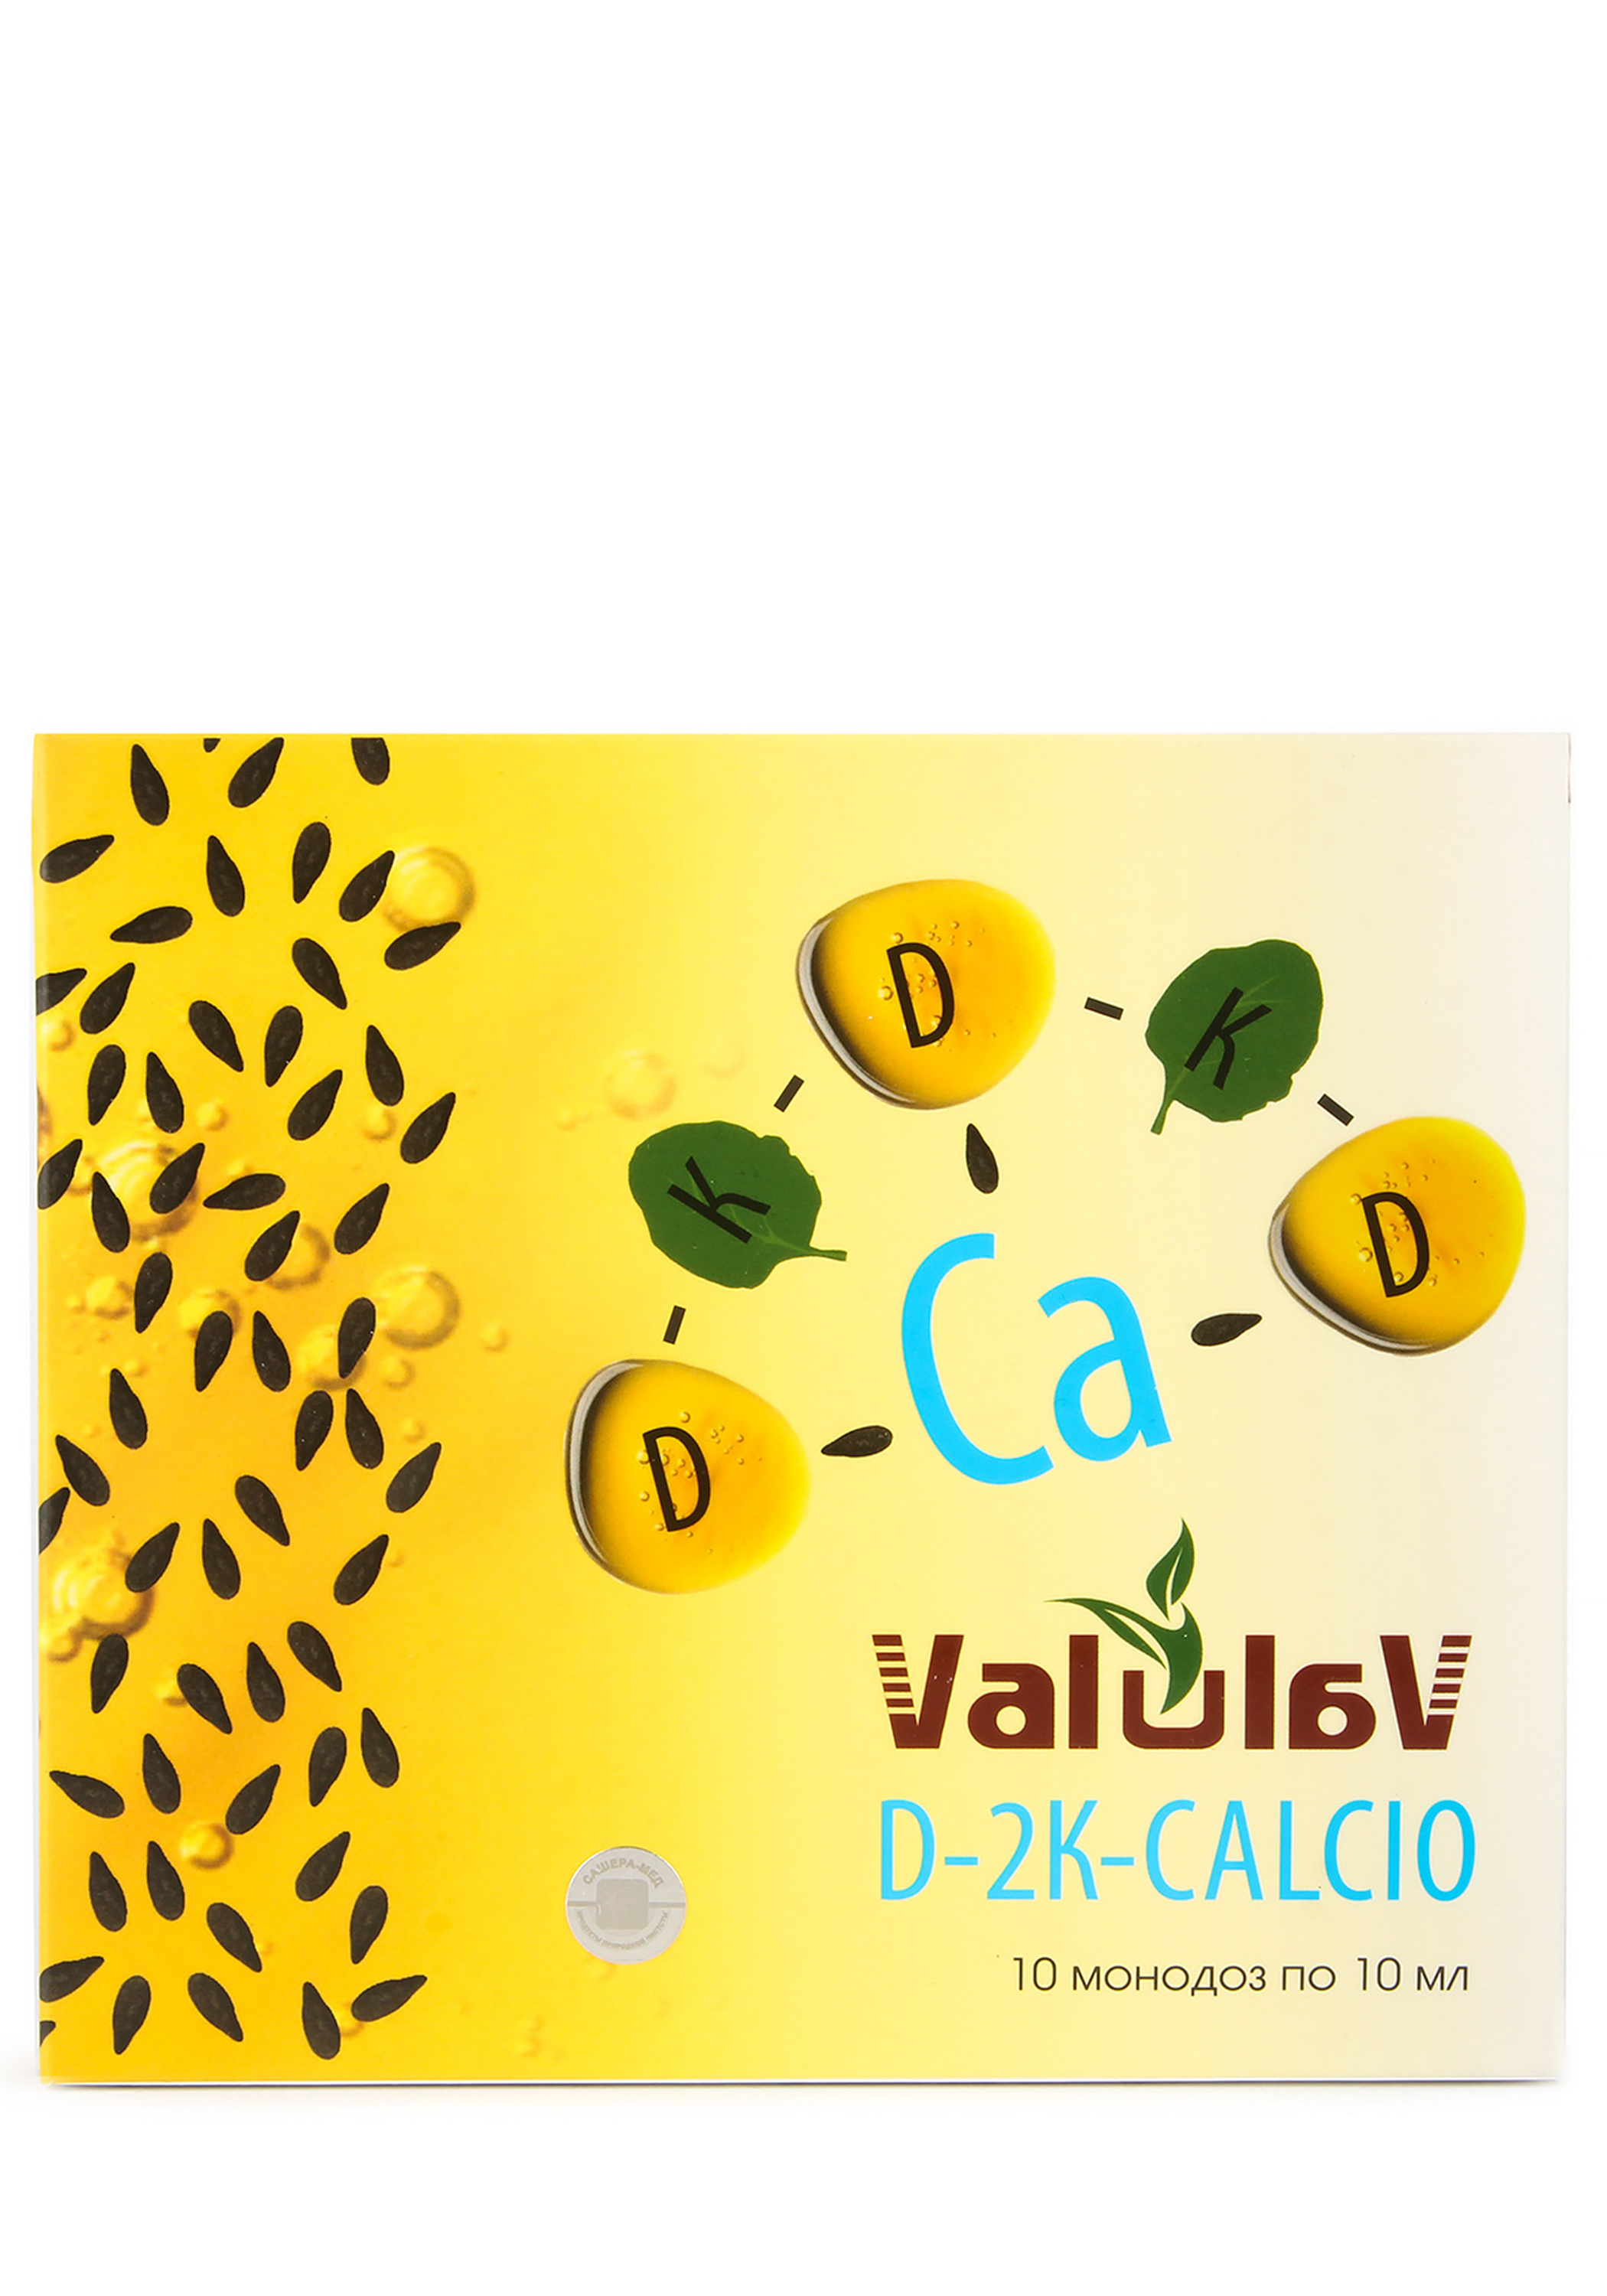 ValulaV D-2K-CALCIO монодозы №10*10 мл